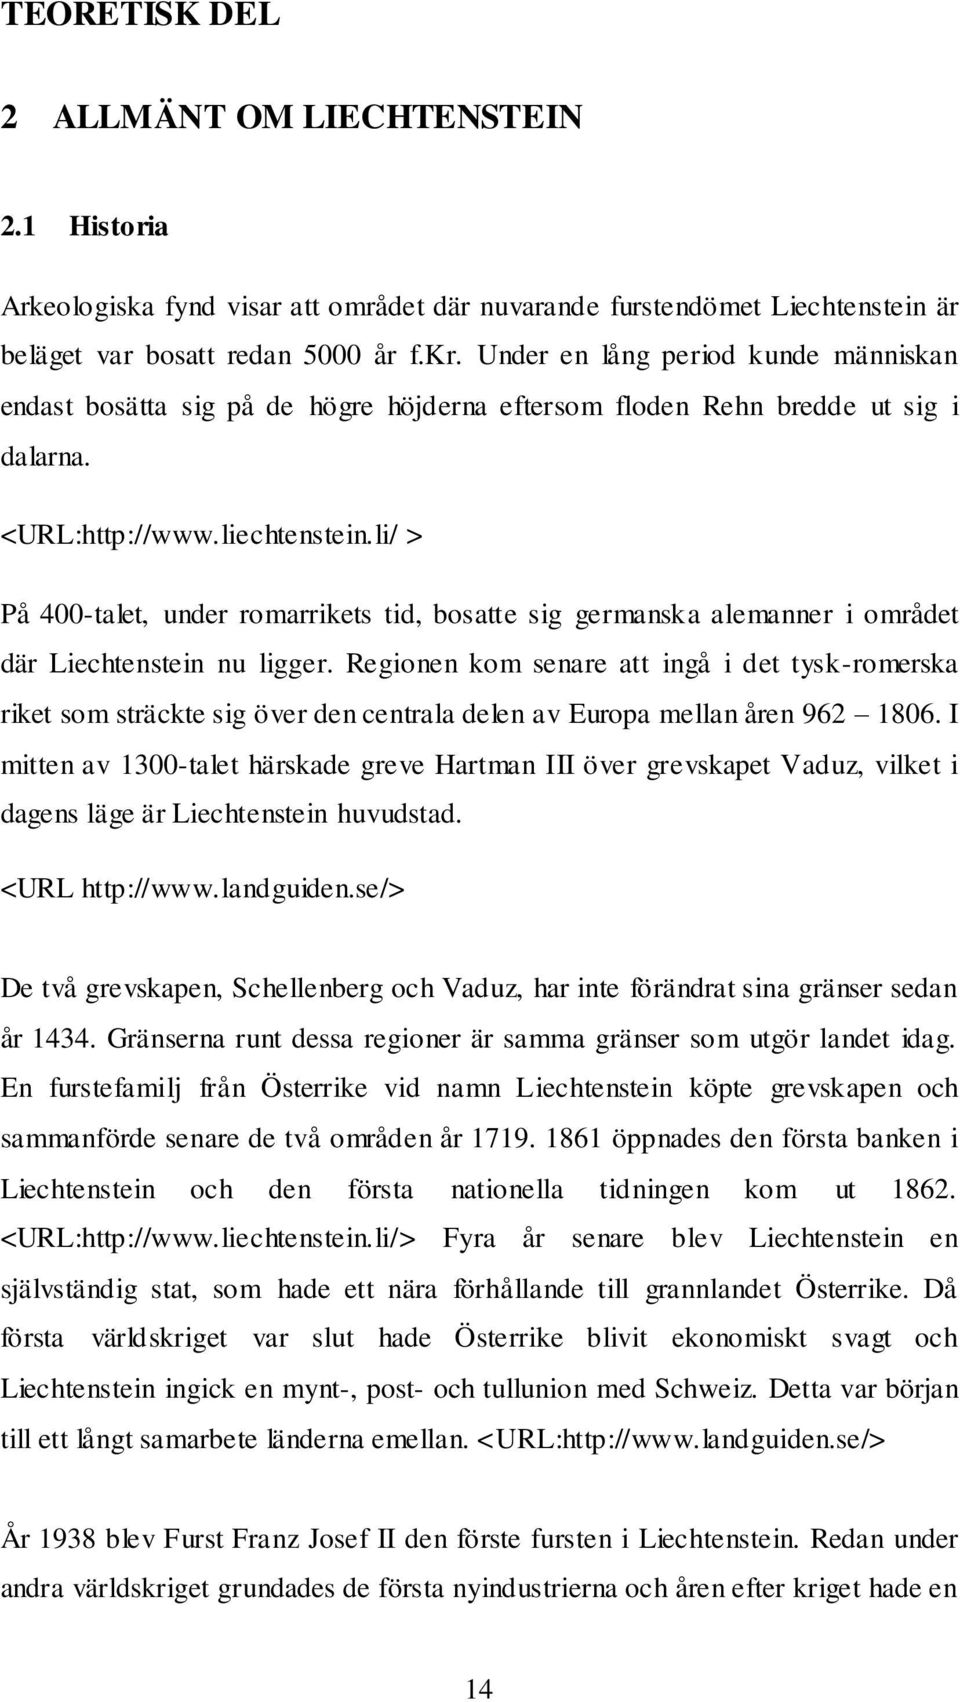 li/ > På 400-talet, under romarrikets tid, bosatte sig germanska alemanner i området där Liechtenstein nu ligger.